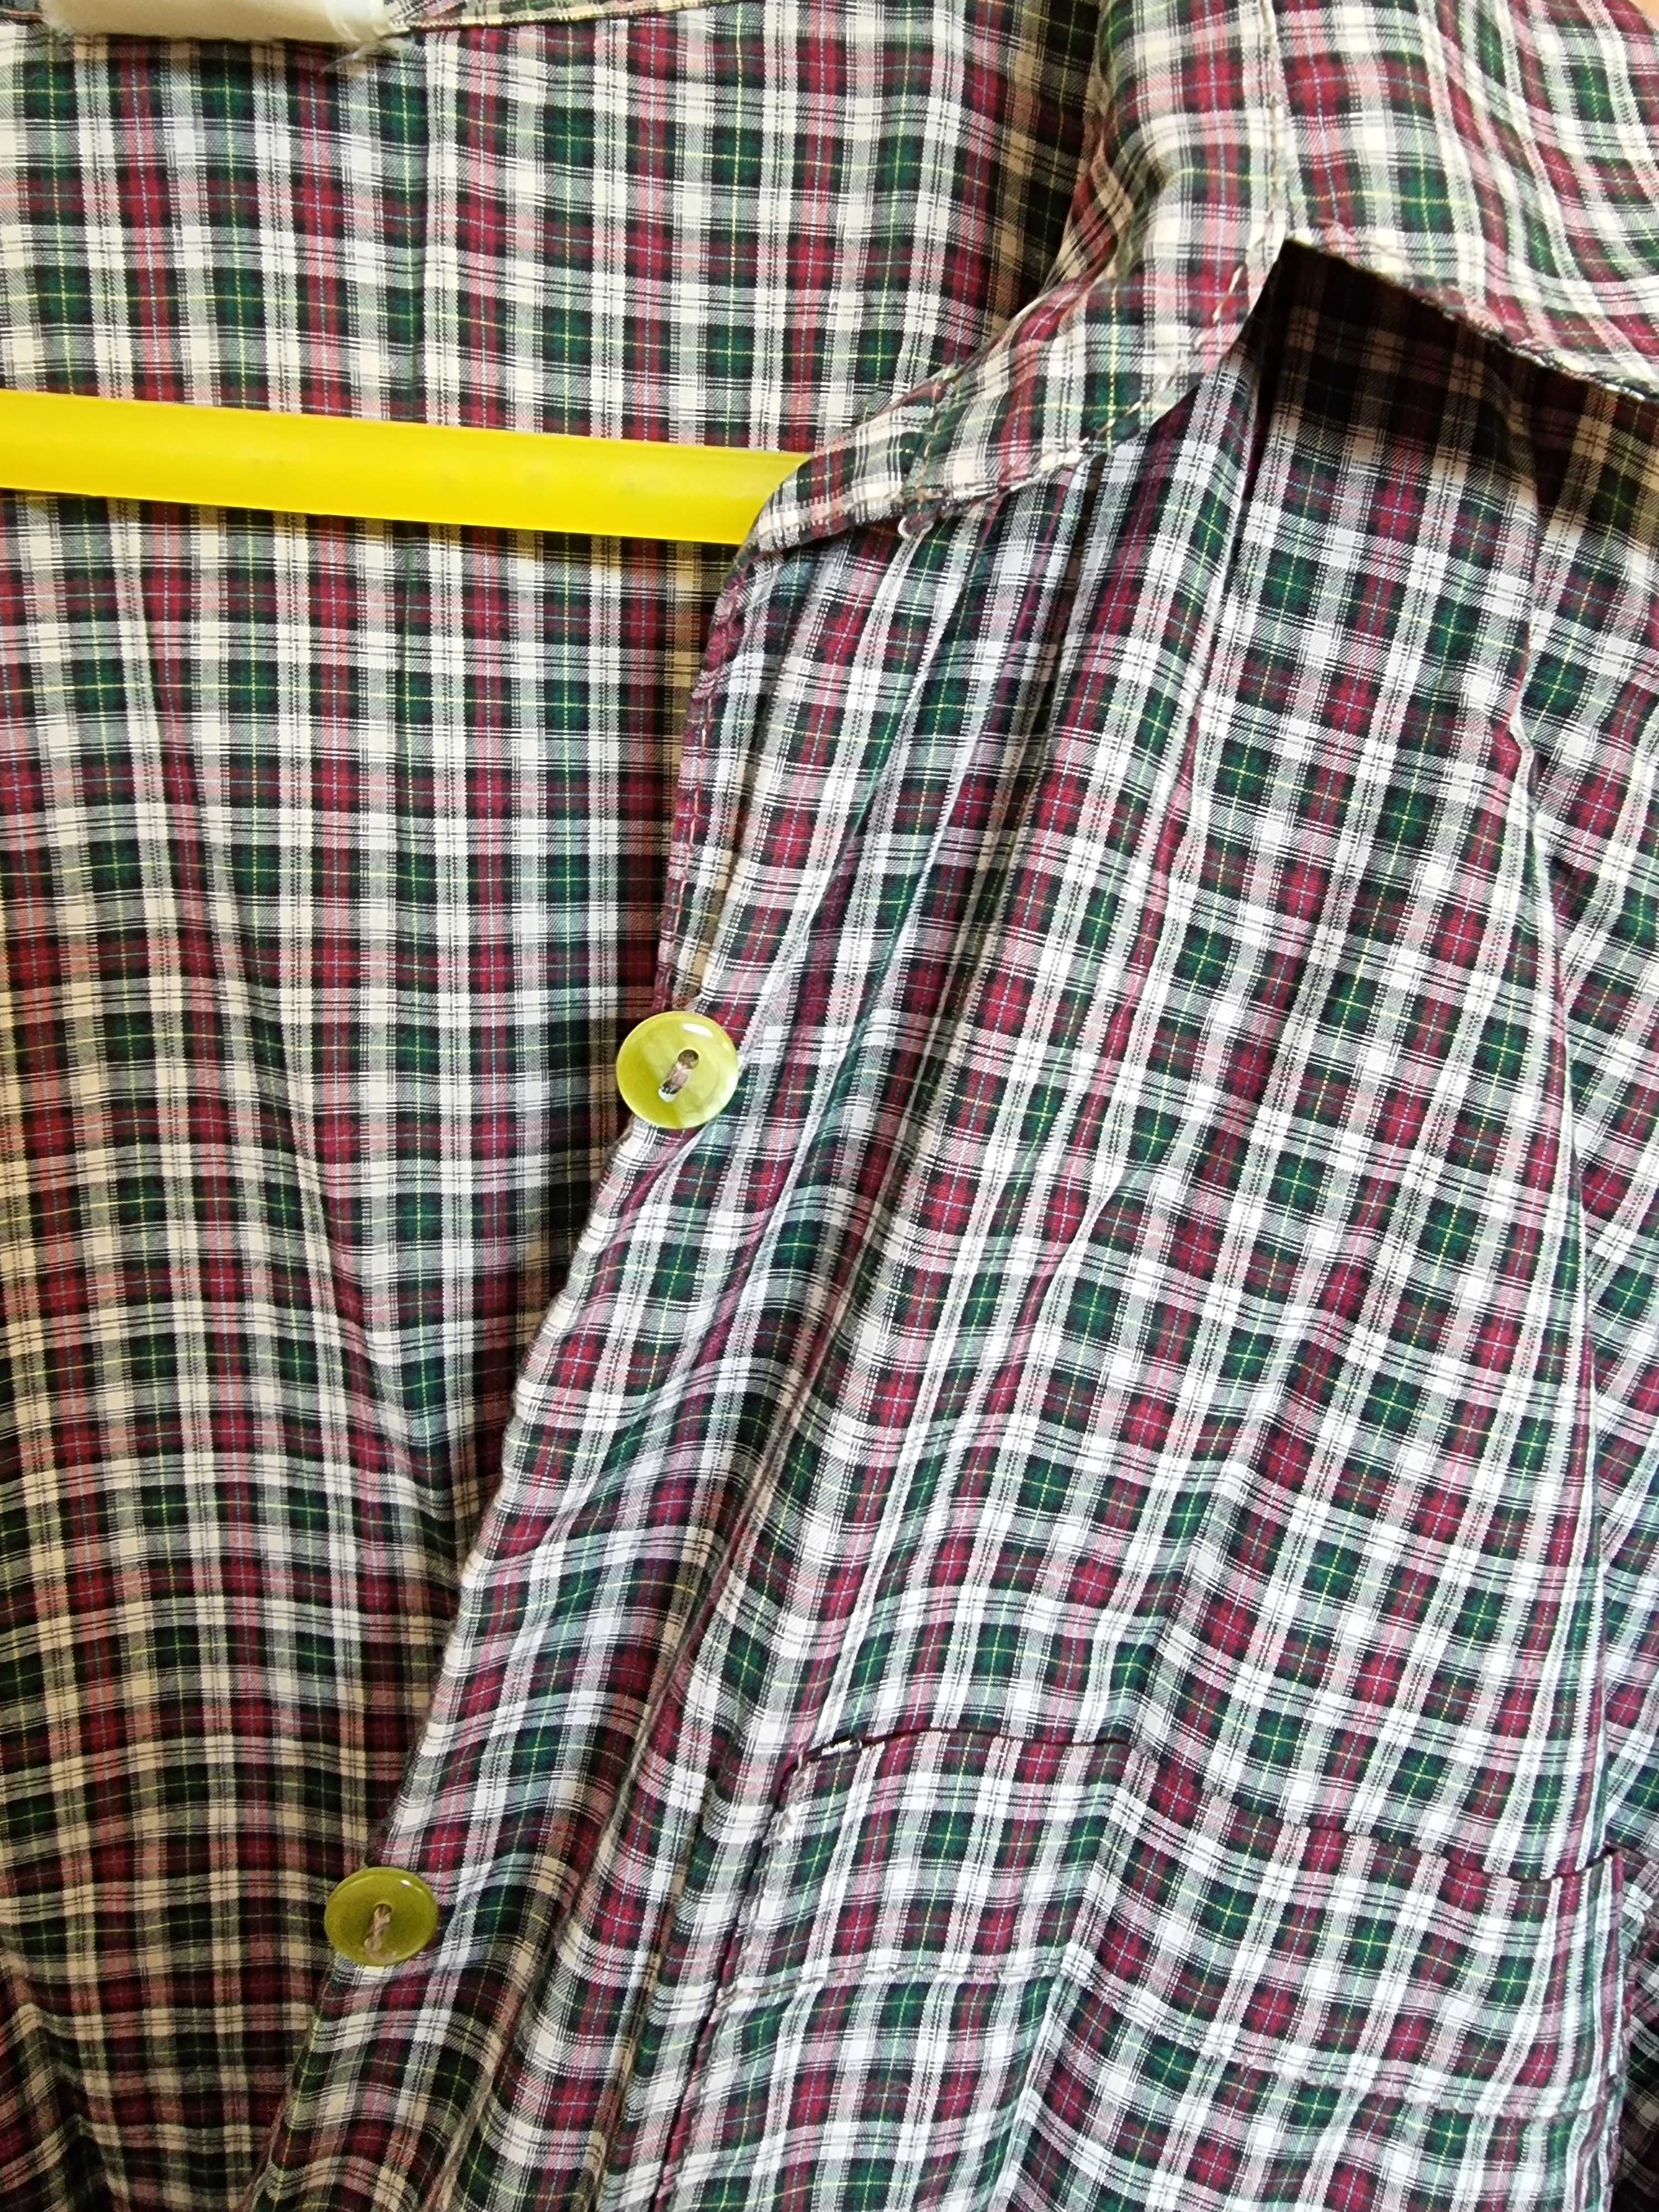 Camisa com padrão quadrangular roxo e verde, tamanho M/L